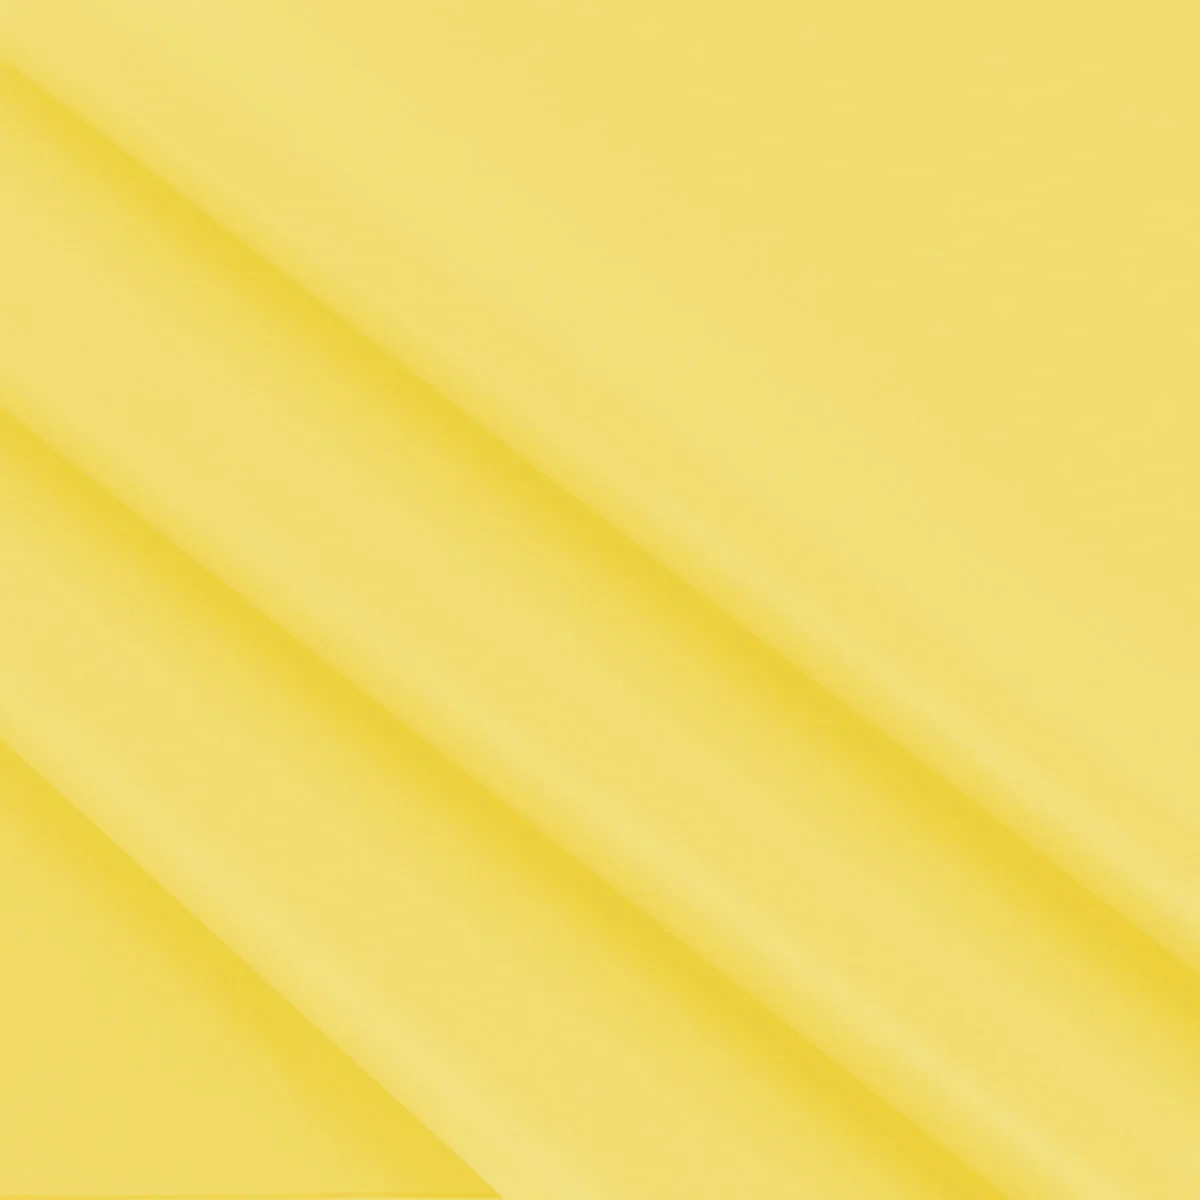 Vloeipapier geel 35 x 50 cm (480 vellen)